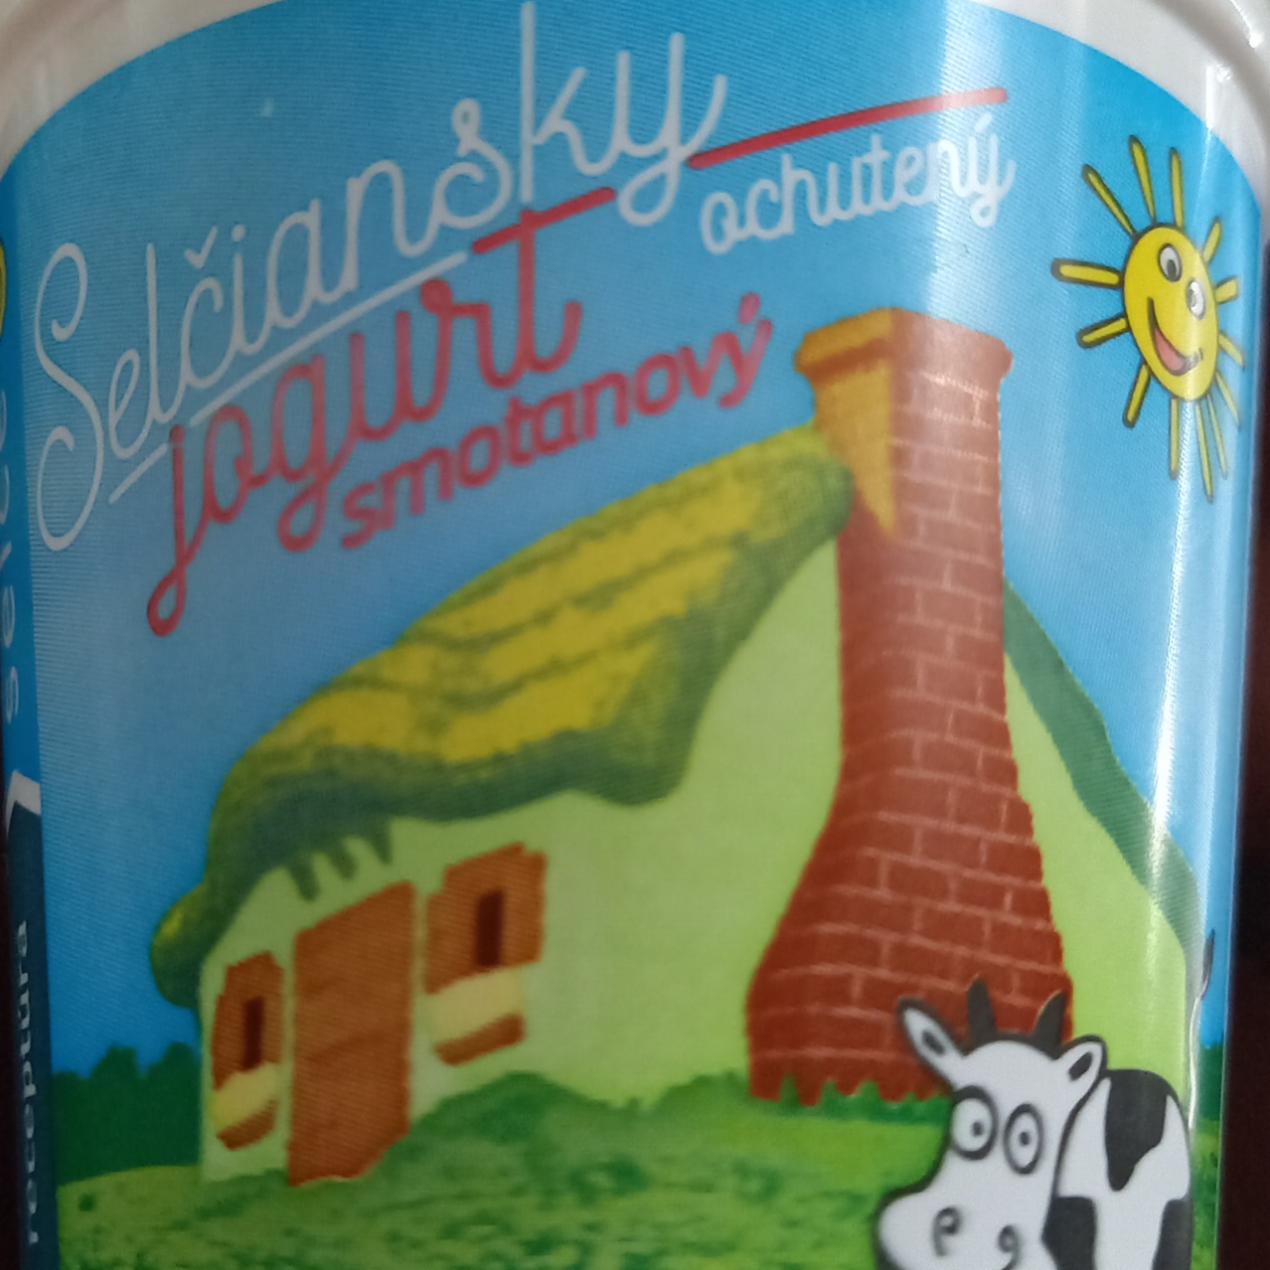 Fotografie - Selčianský jogurt smotanový ochutený